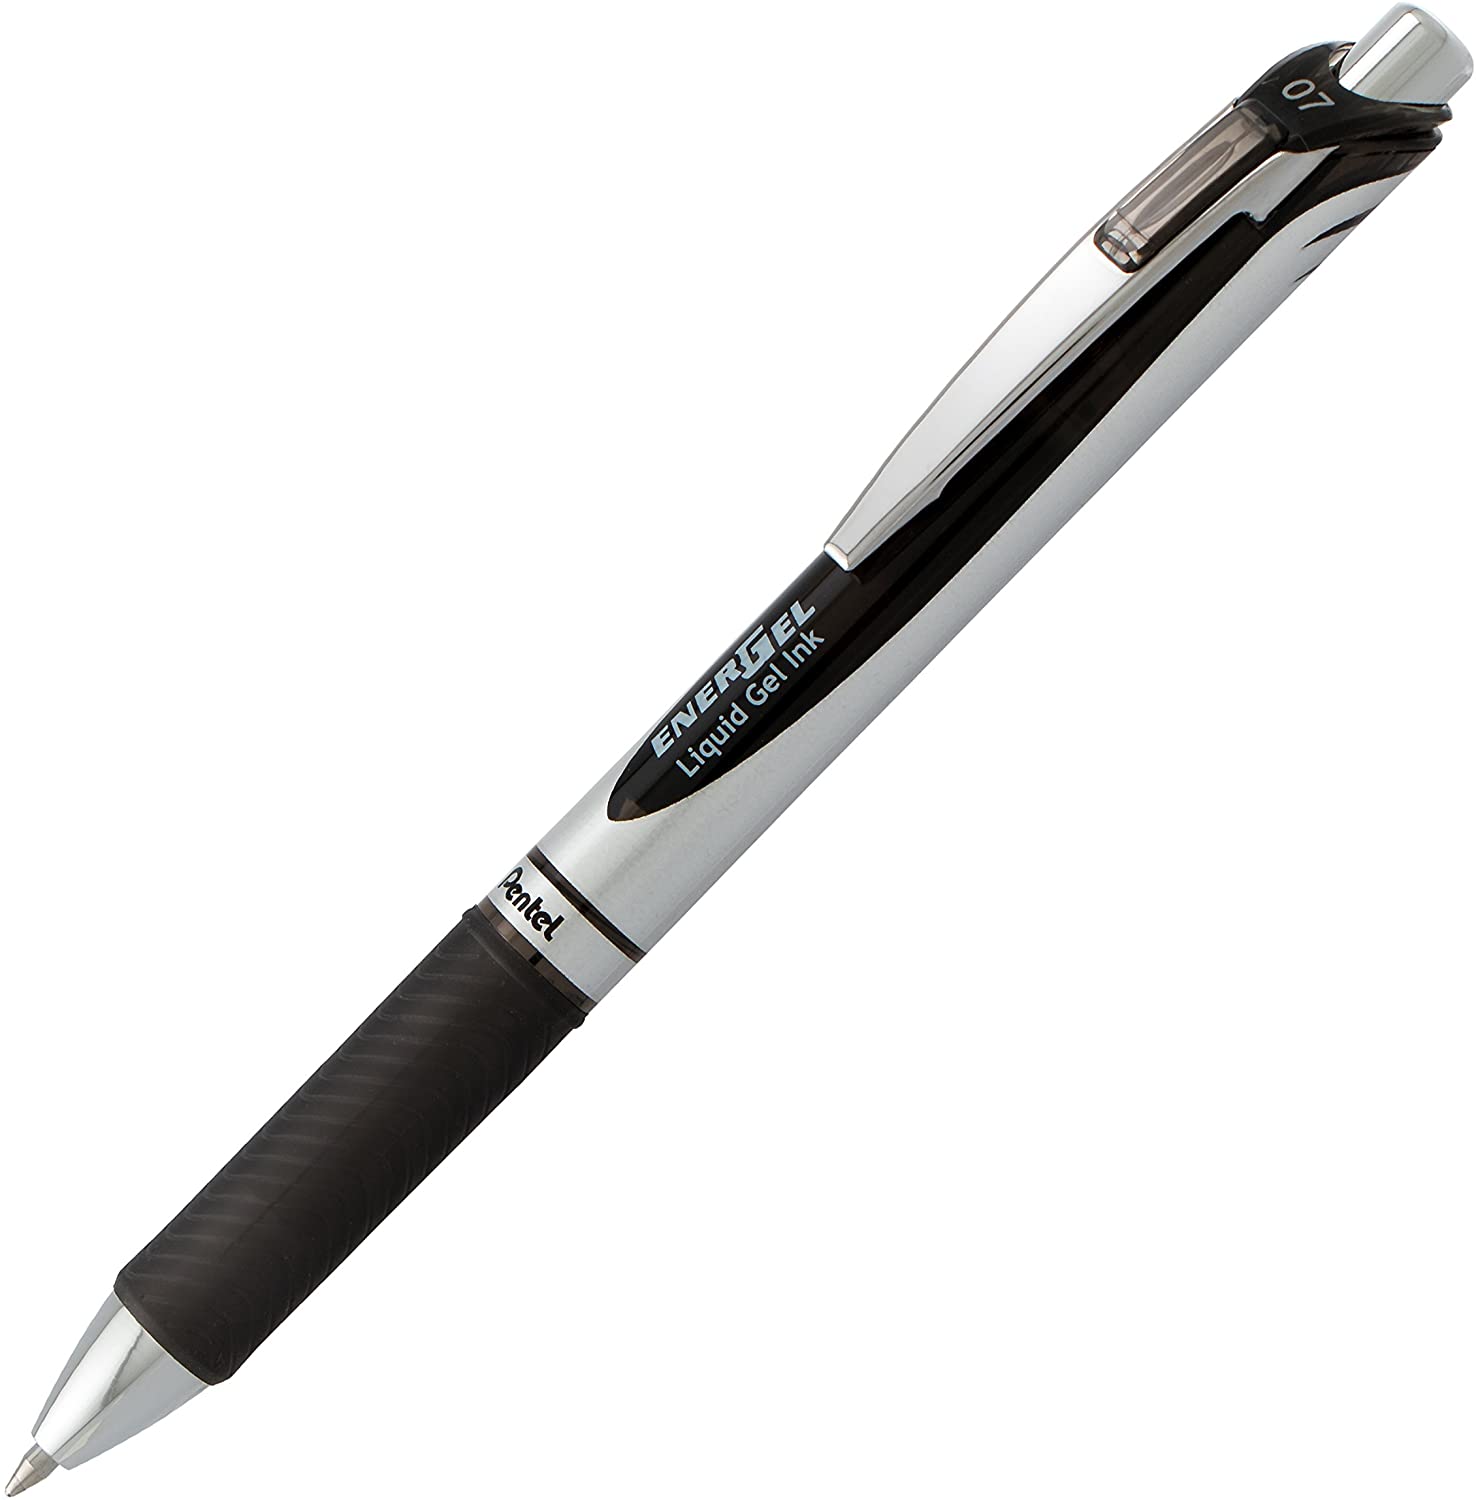 Pentel EnerGel Deluxe RTX Retractable Liquid Gel Pen, 0.7mm, Metal Tip, Black Ink, 2 Pack - $2.97 at Amazon